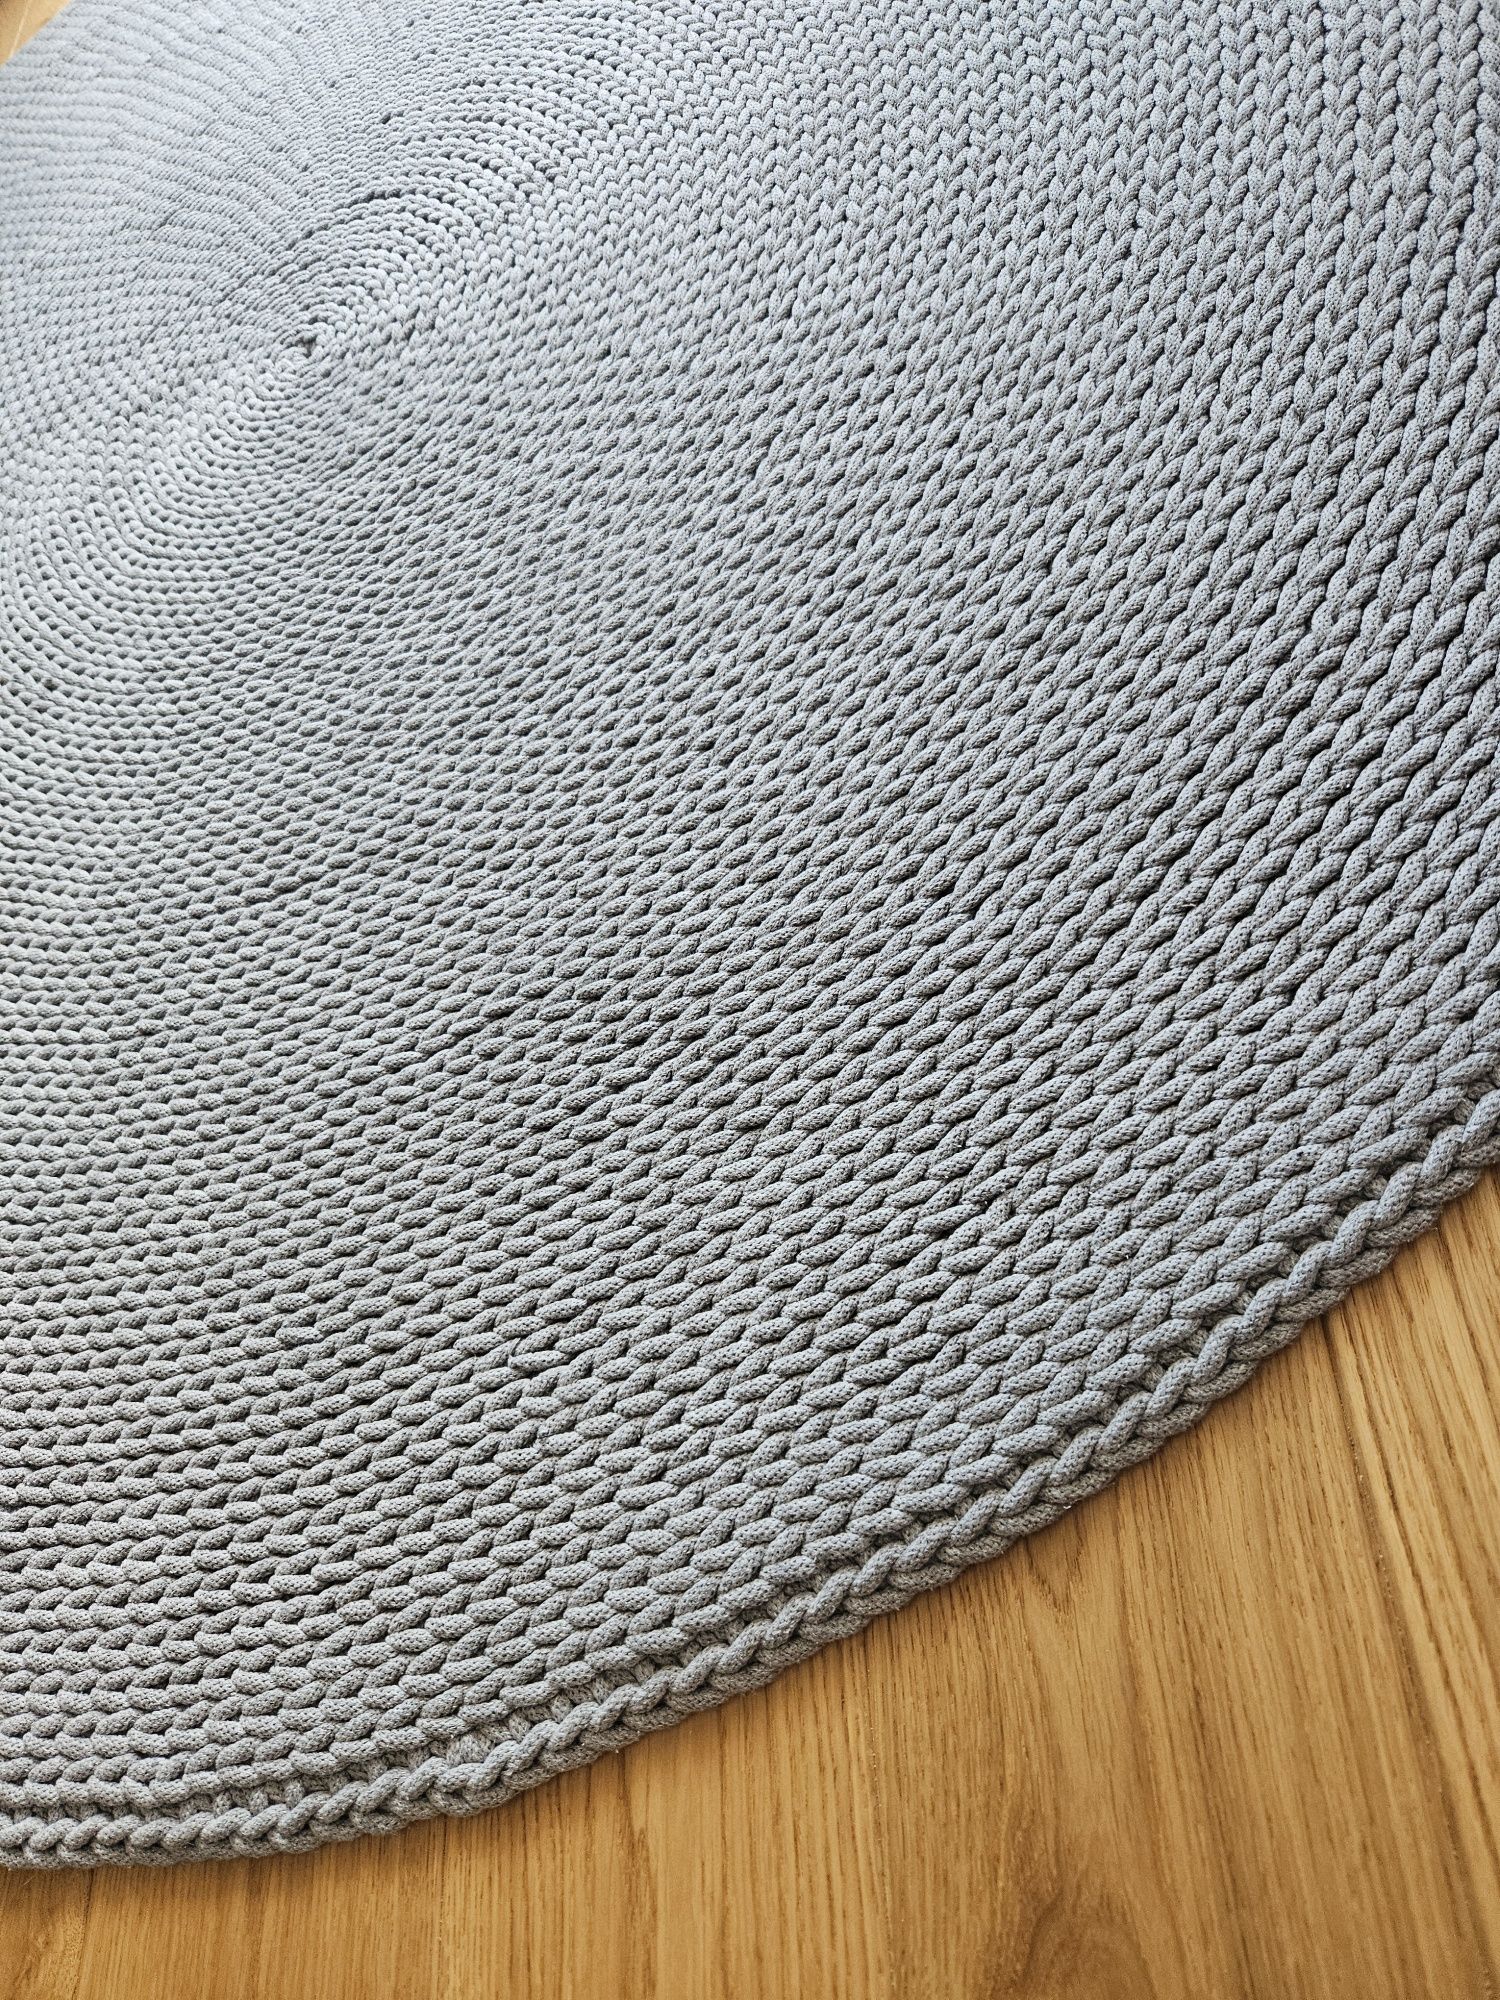 Szary dywan ze sznurka bawełnianego 150 cm